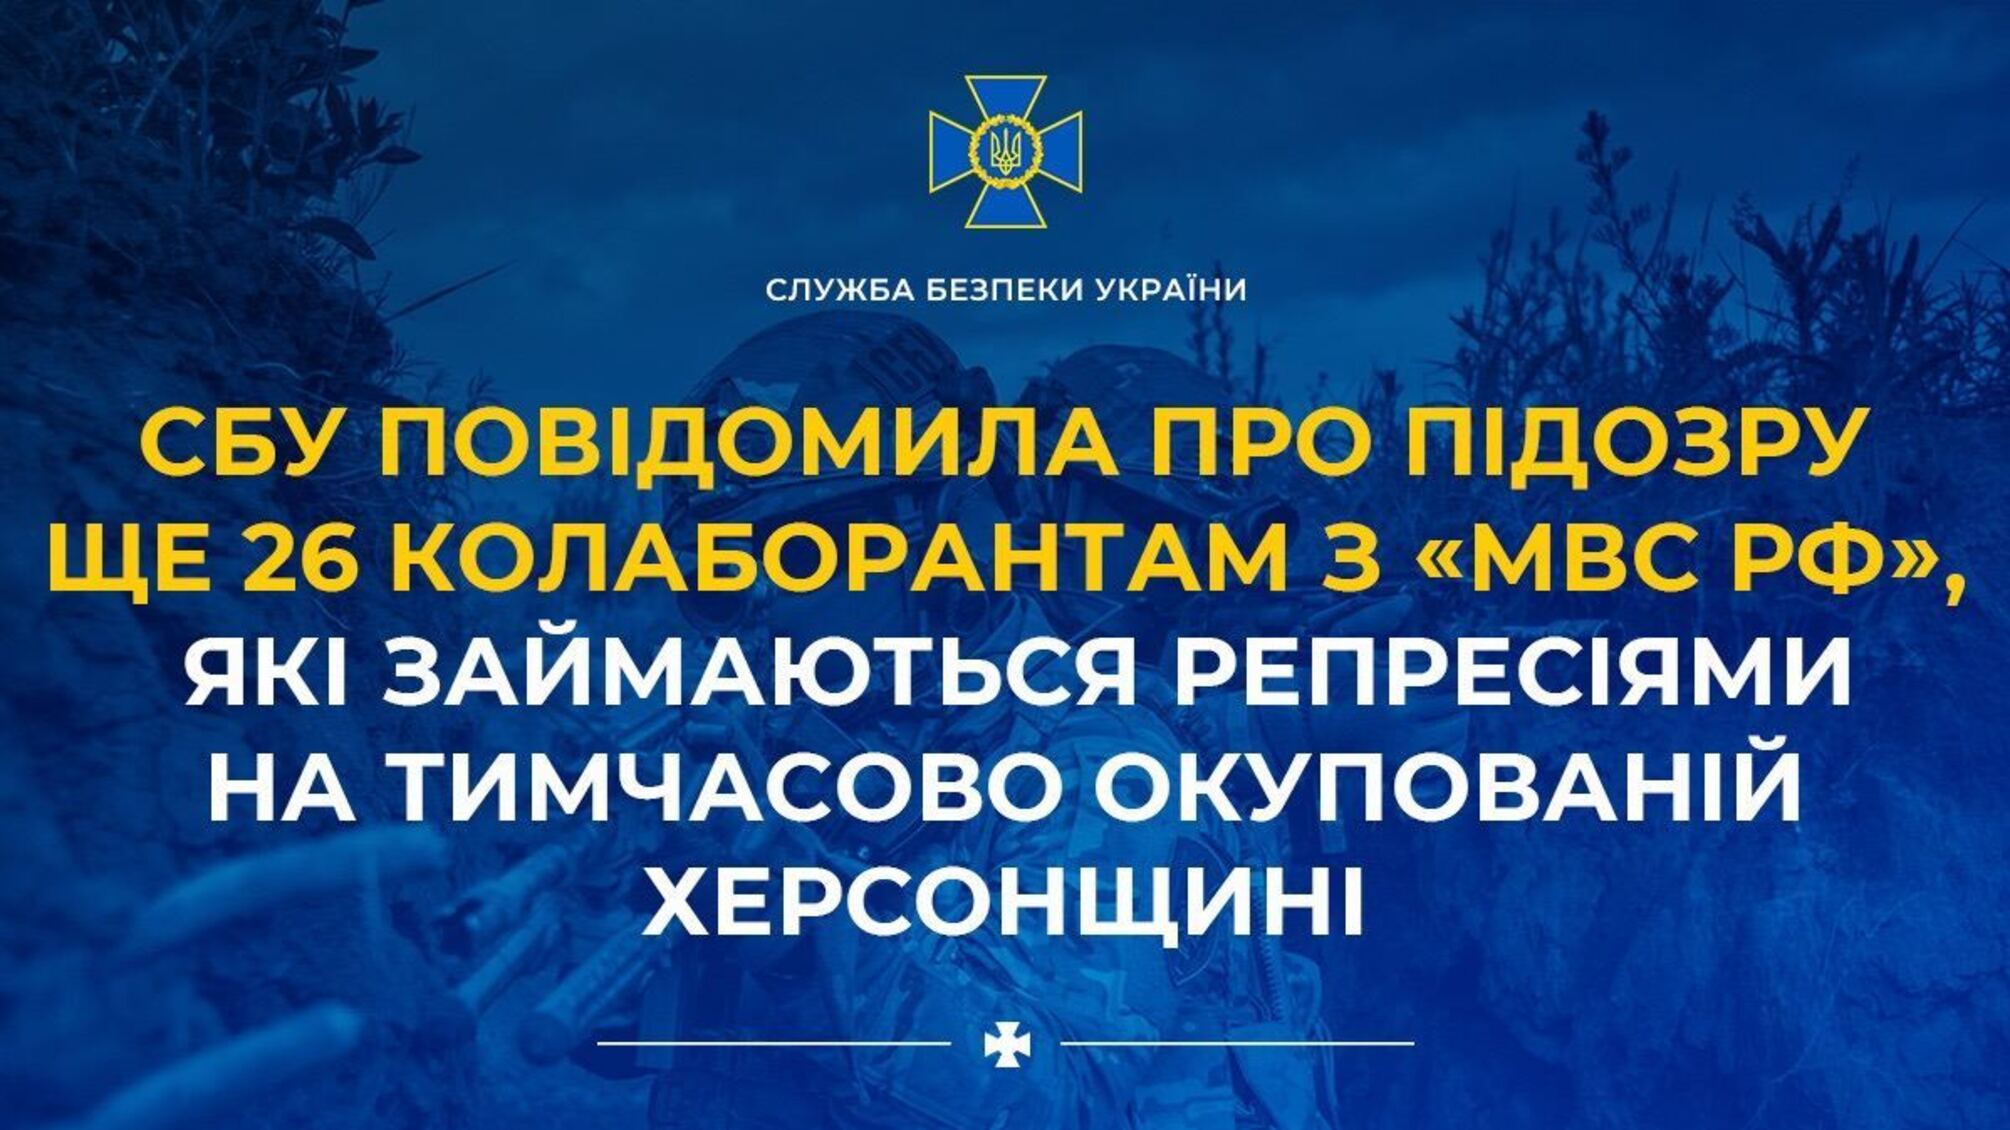 СБУ сообщила о подозрении еще 26 коллаборантам из «МВС РФ», которые занимаются репрессиями на и.о. Херсонщине